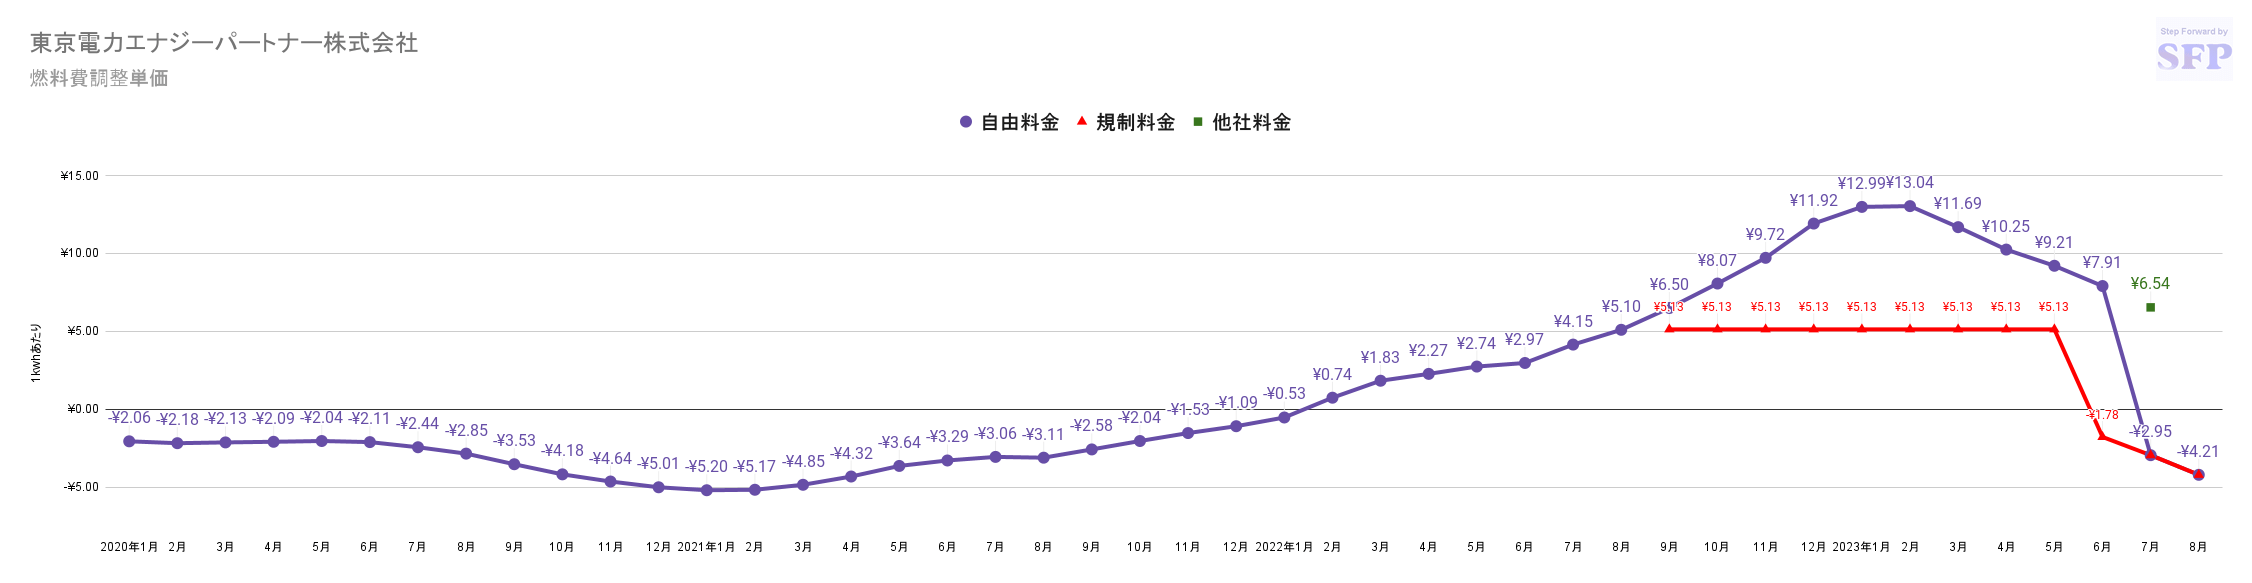 東京電力エナジーパートナーの燃料費調整額単価　過去3年間の推移グラフ